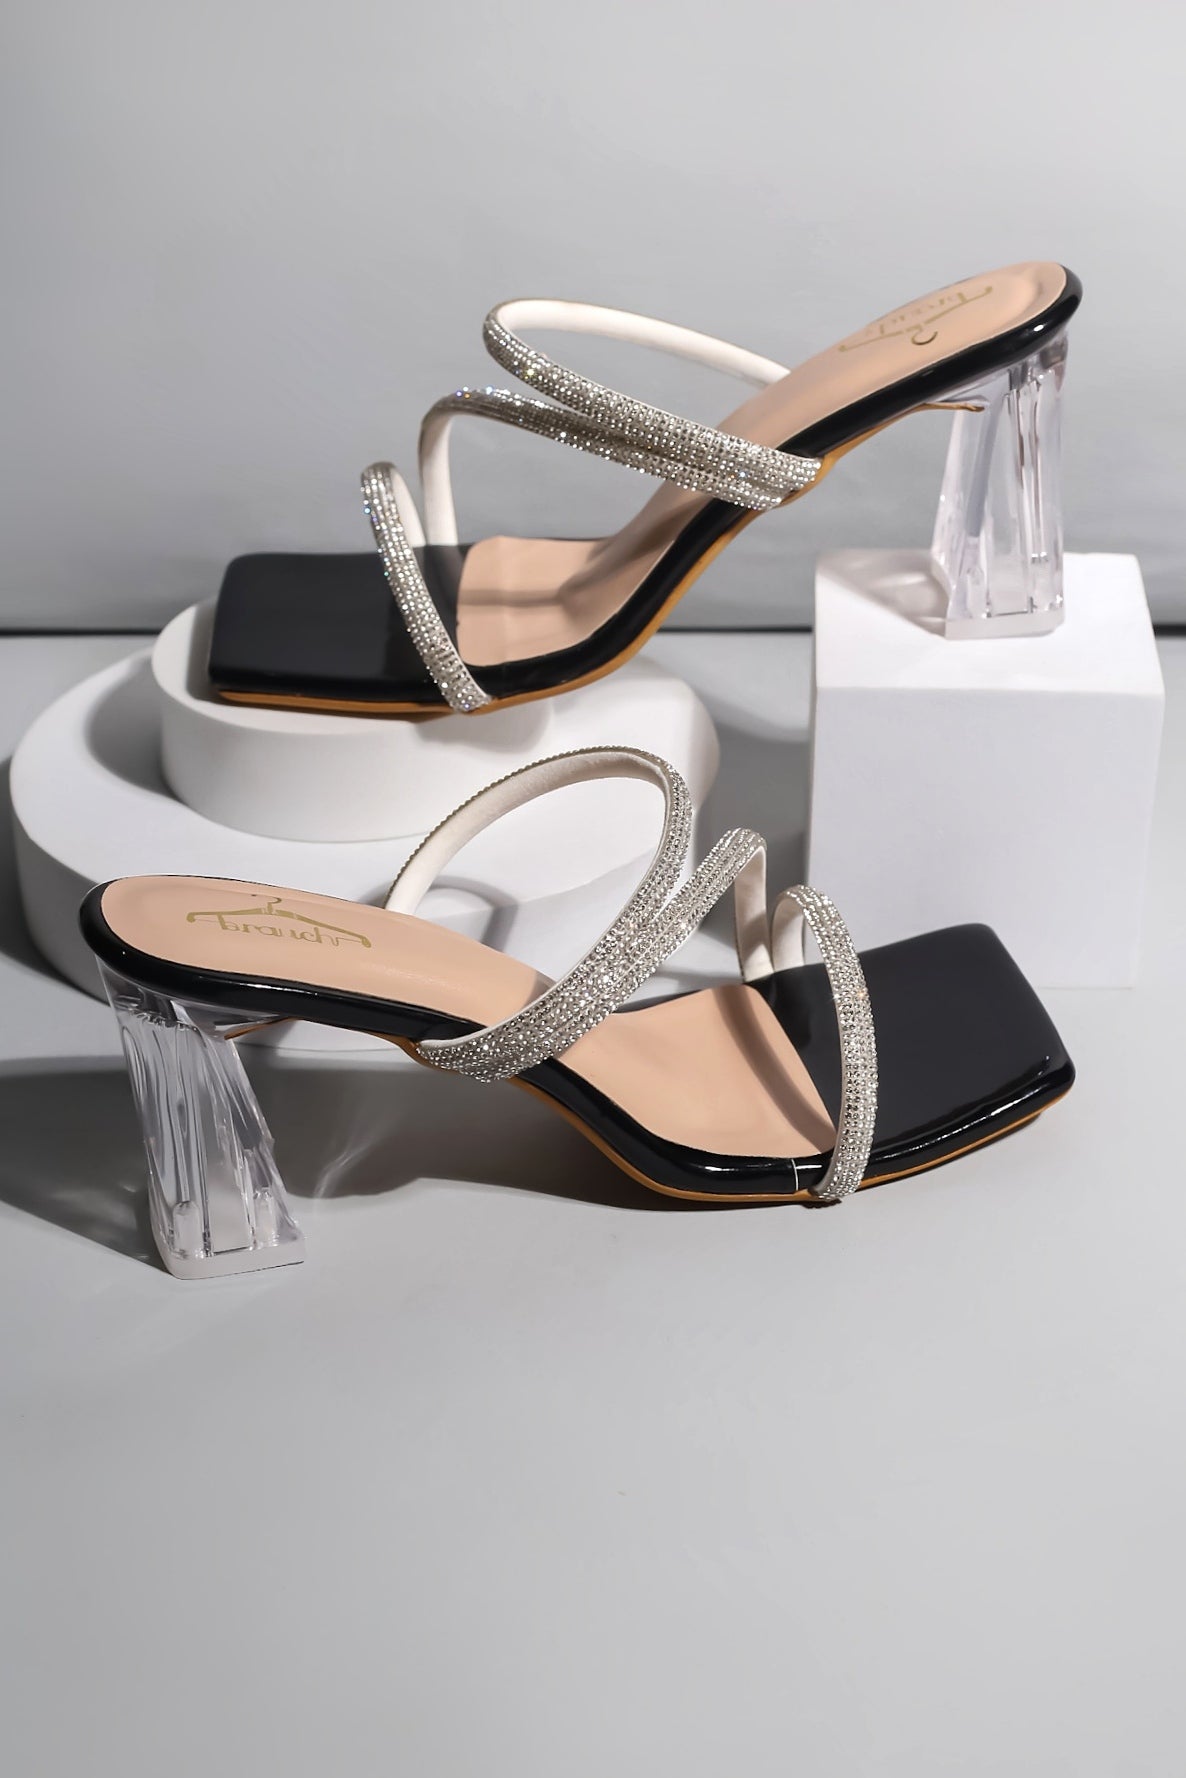 Always On Top Heeled Sandals - Black | Fashion Nova, Shoes | Fashion Nova